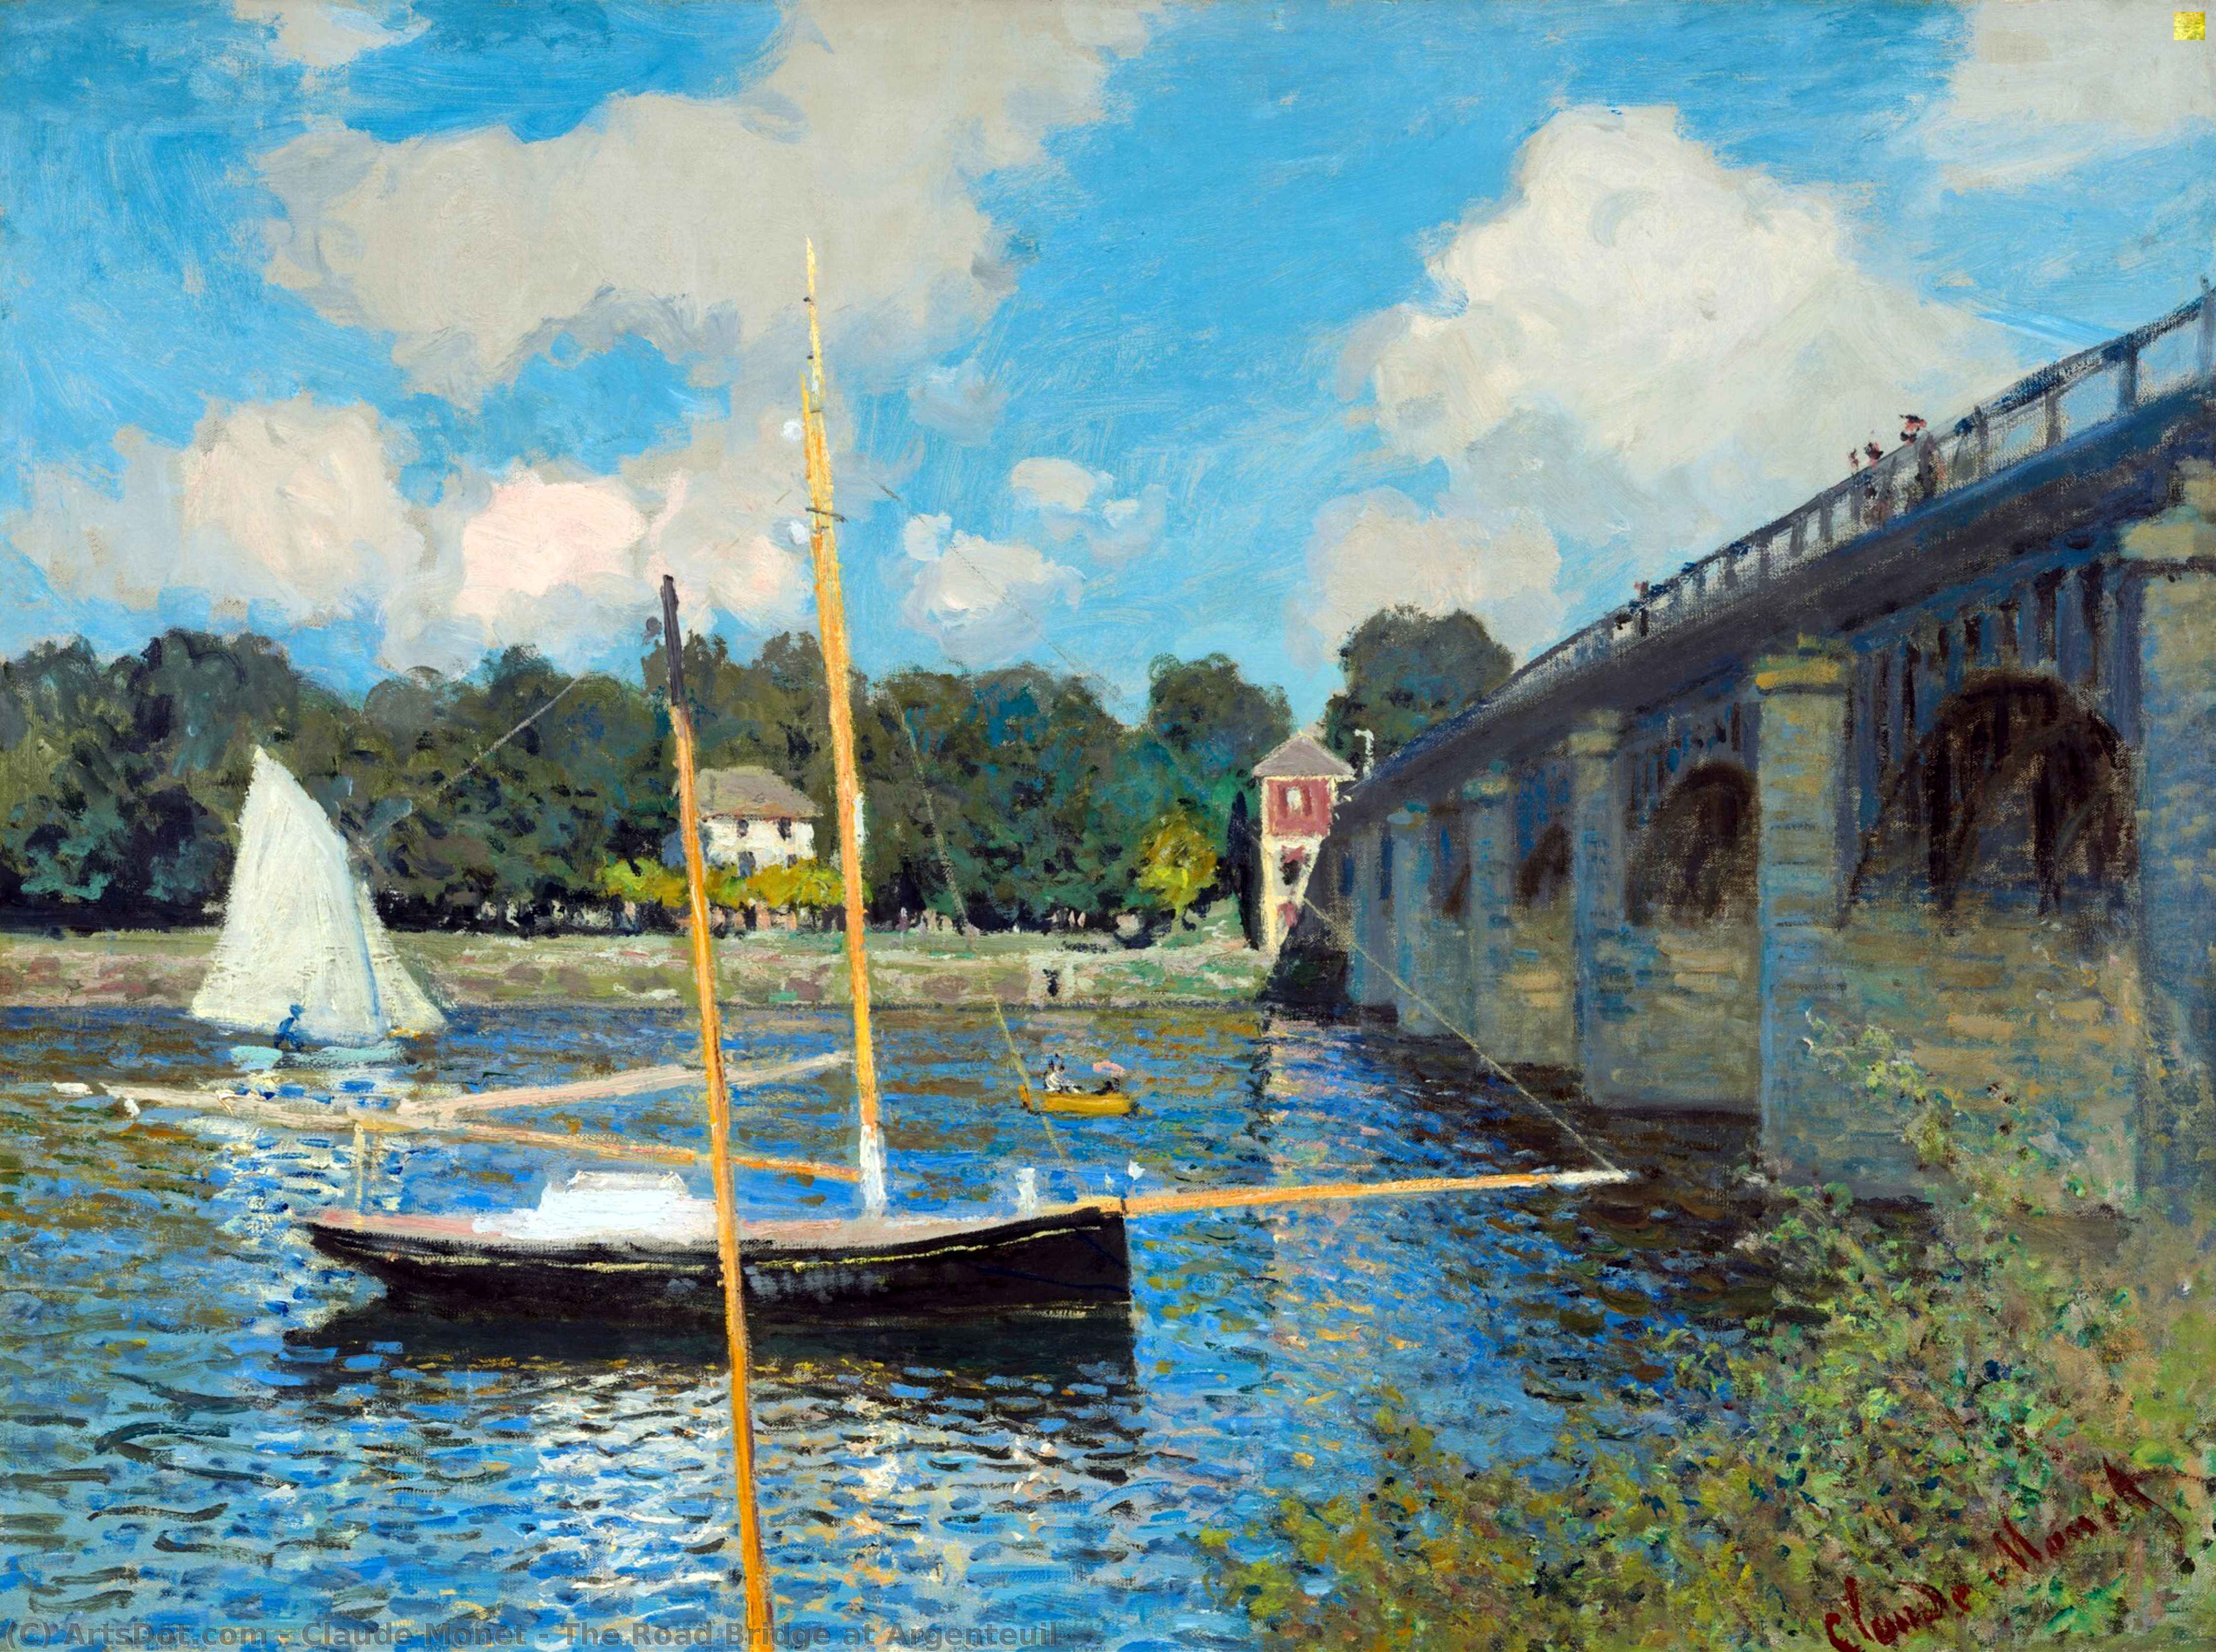 Acheter Reproductions D'art De Musée Le pont de la route à Argenteuil, 1874 de Claude Monet (1840-1926, France) | ArtsDot.com